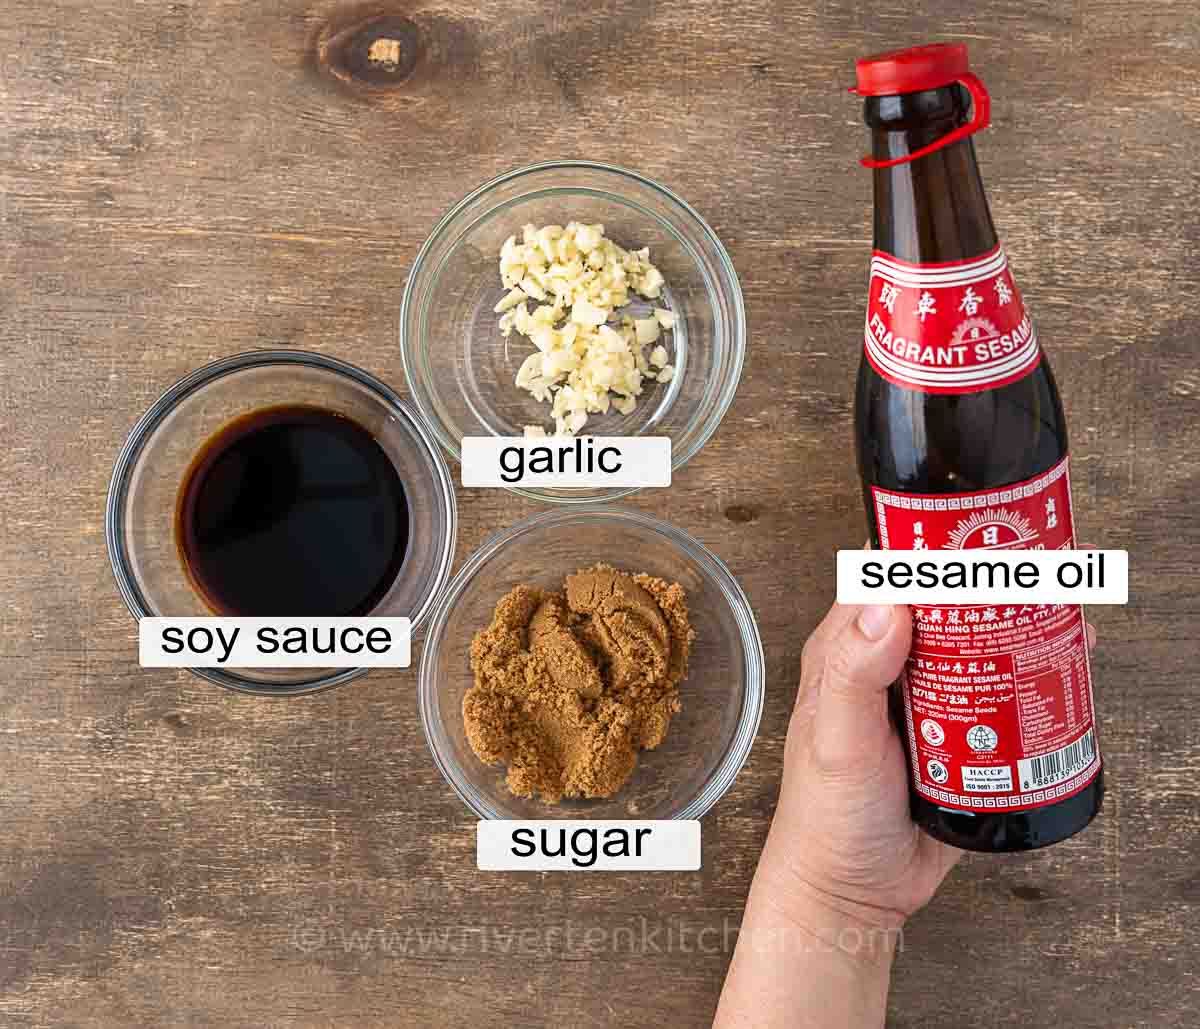 Japchae sauce ingredients: soy sauce, brown sugar, garlic and sesame oil.